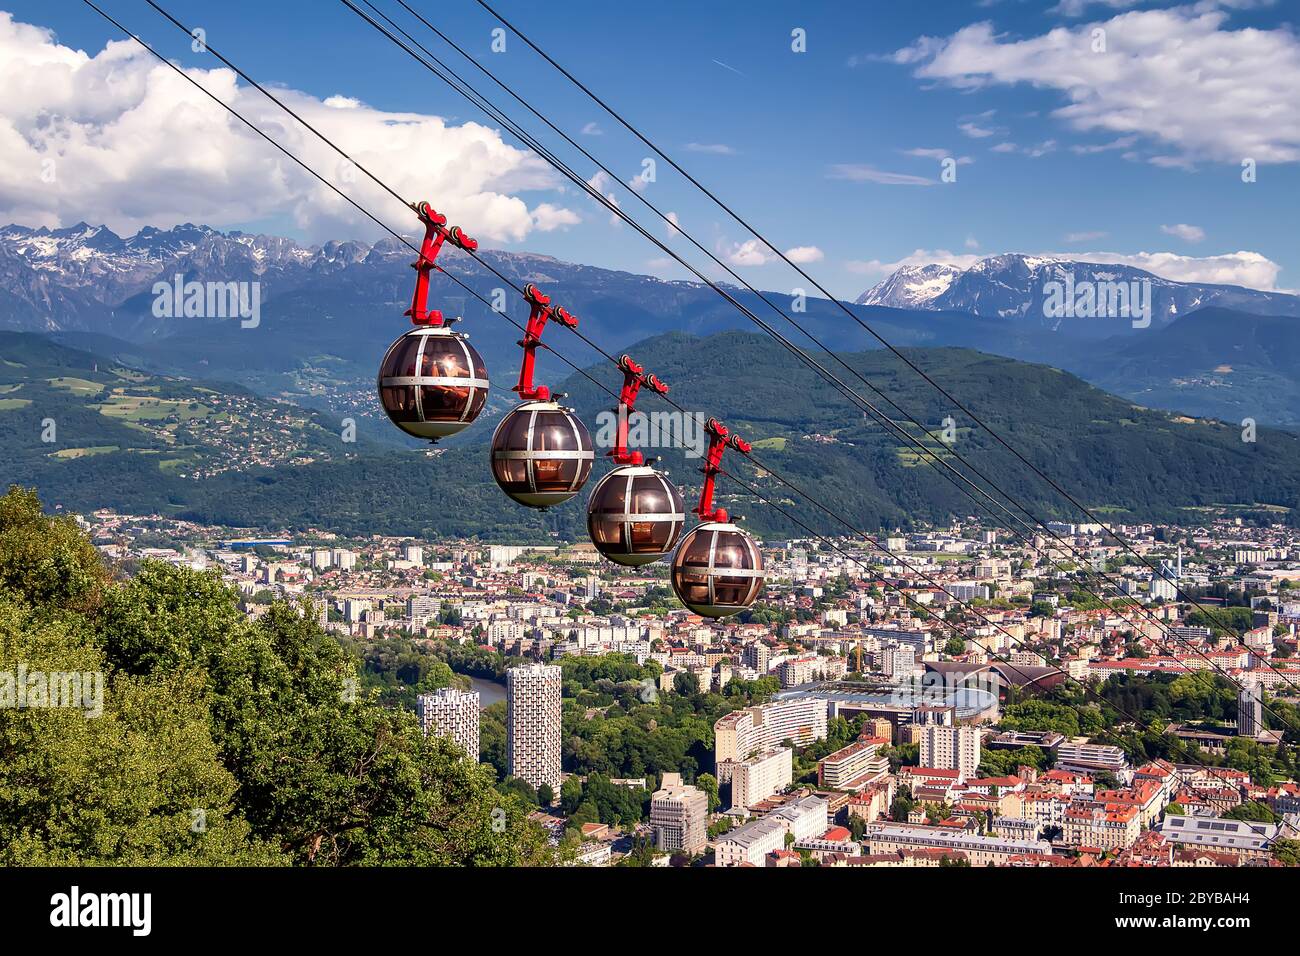 Vue pittoresque sur la voie du câble et la ville. Grenoble, France. Téléphérique Grenoble-Bastille au premier plan Banque D'Images